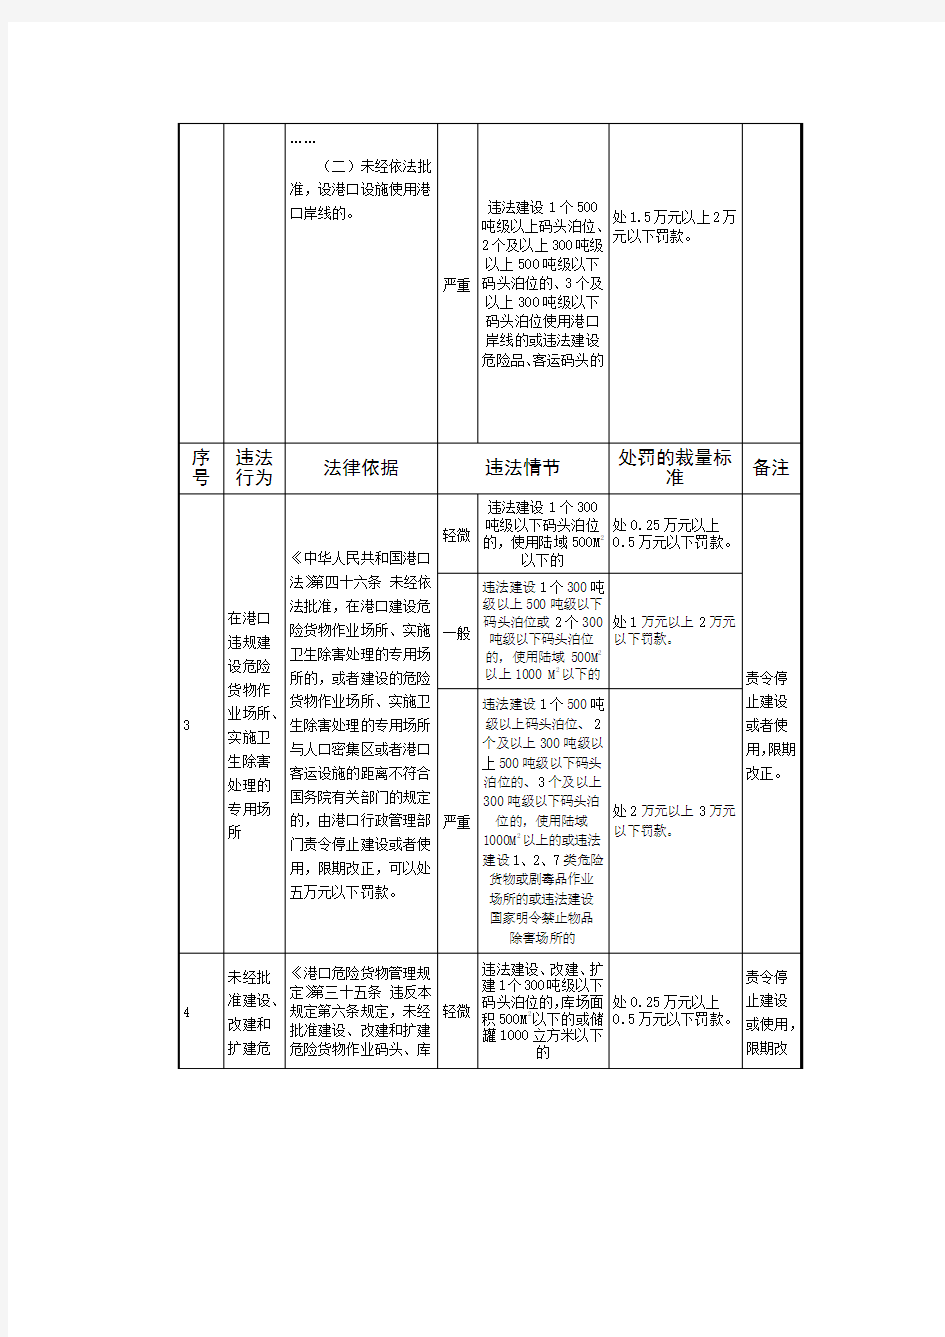 川省交通厅规范交通行政处罚自由裁量权实施标准(港口行政)